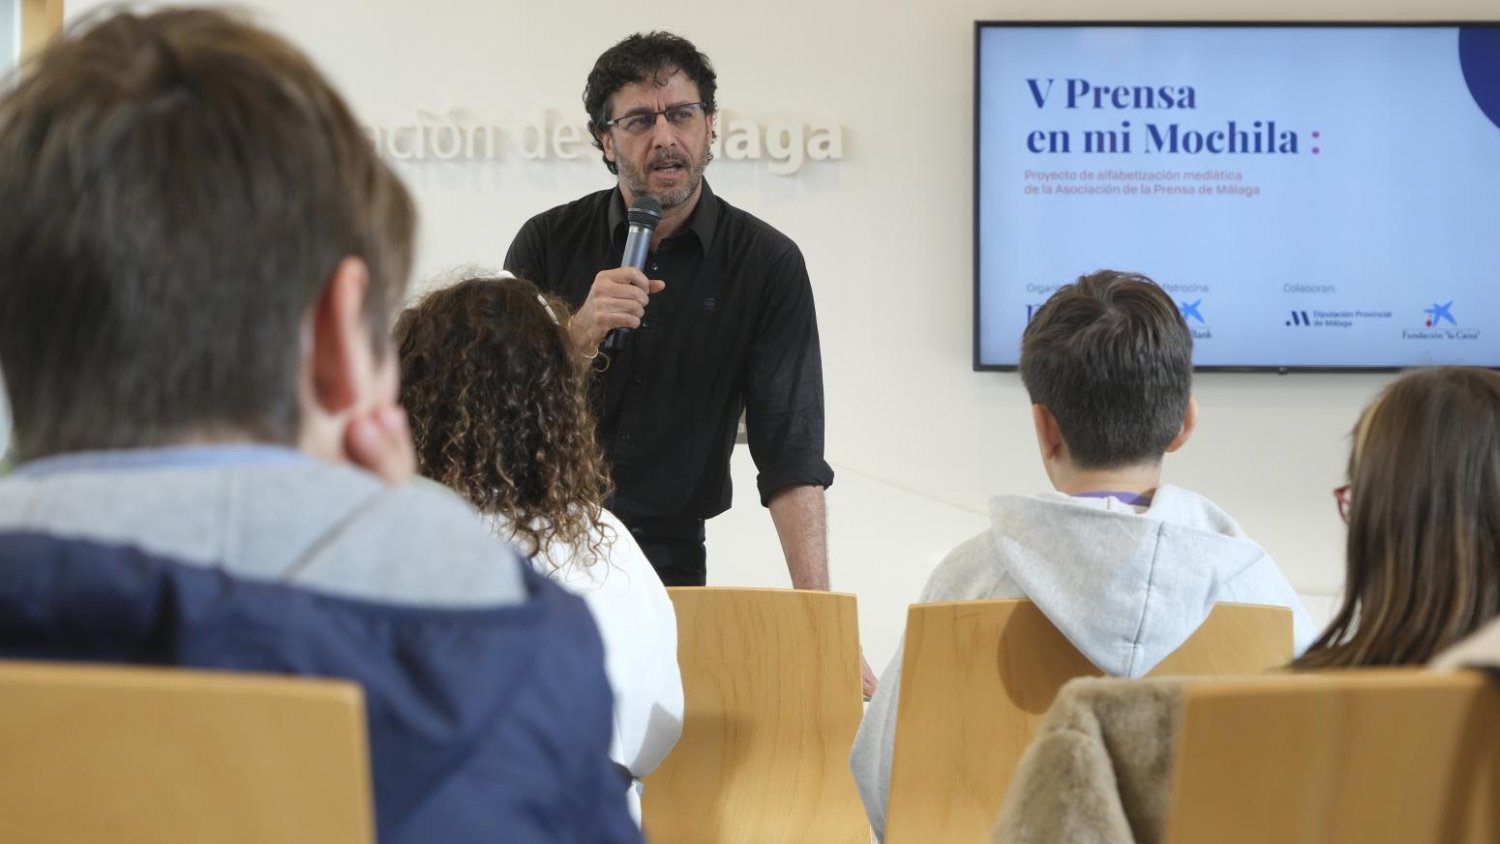 La V Edición de Prensa en mochila: Un encuentro entre Emilio Morenatti y el colegio García Lorca